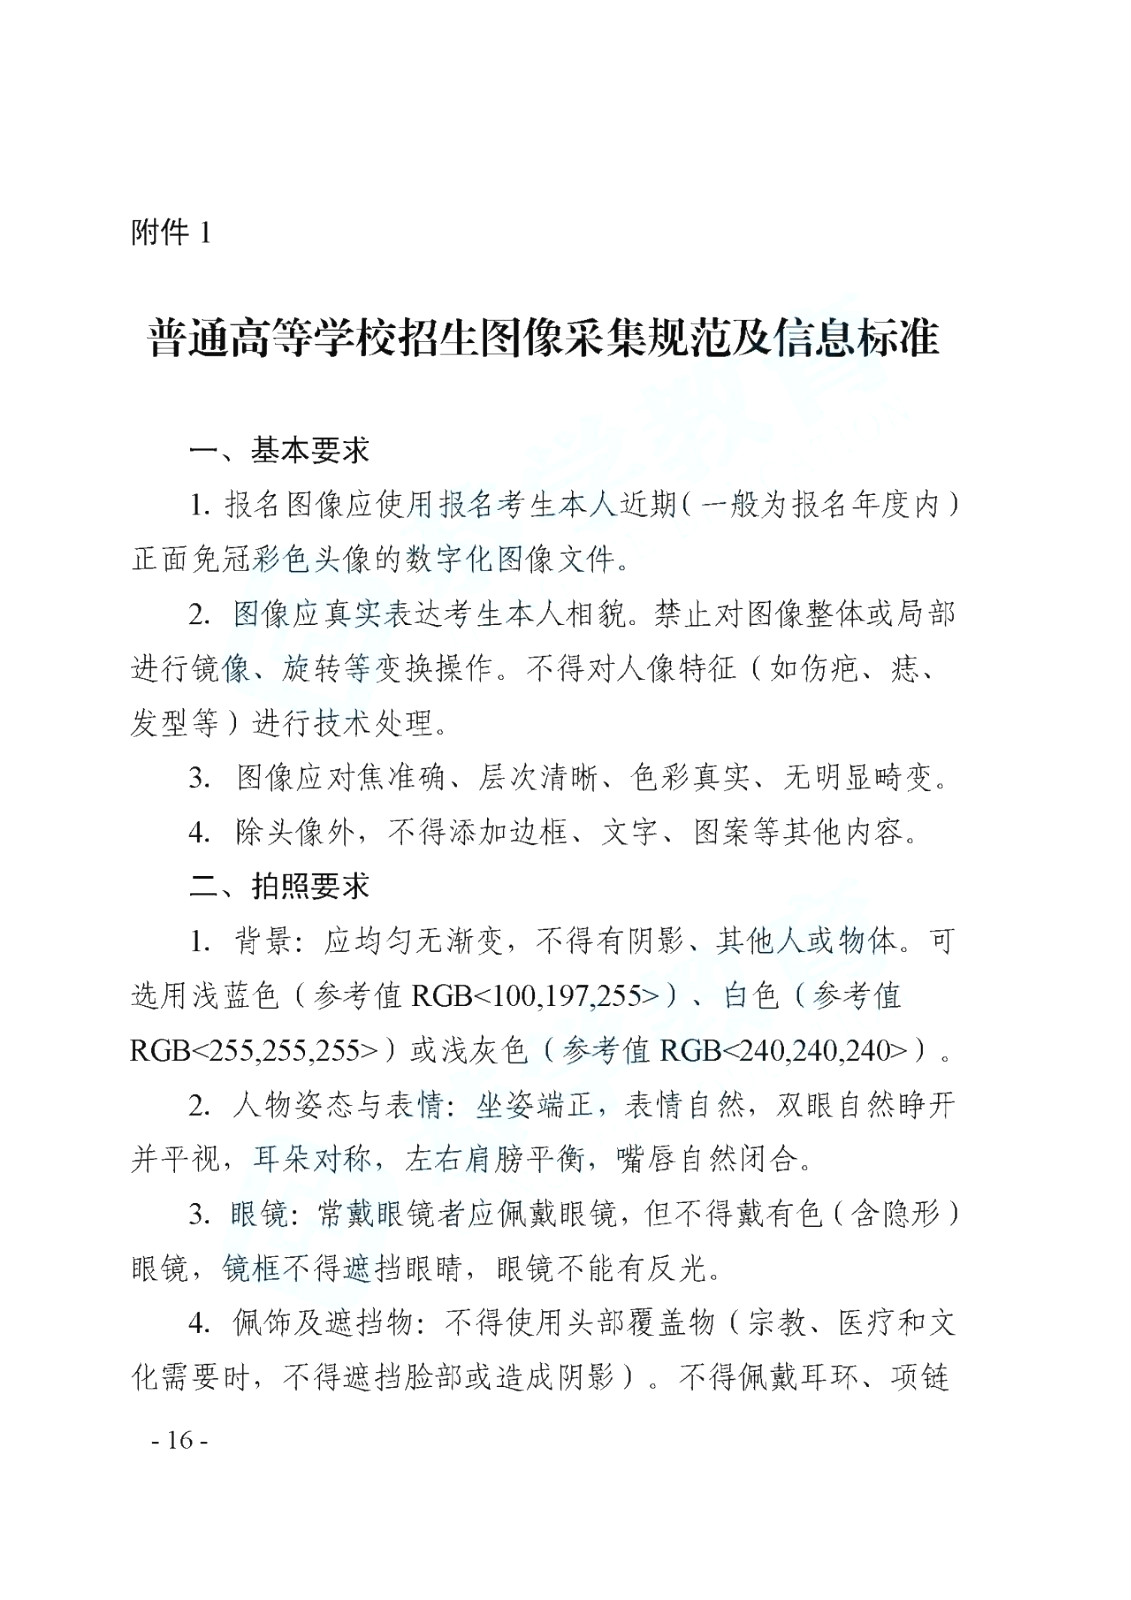 2021年天津专升本考试政策